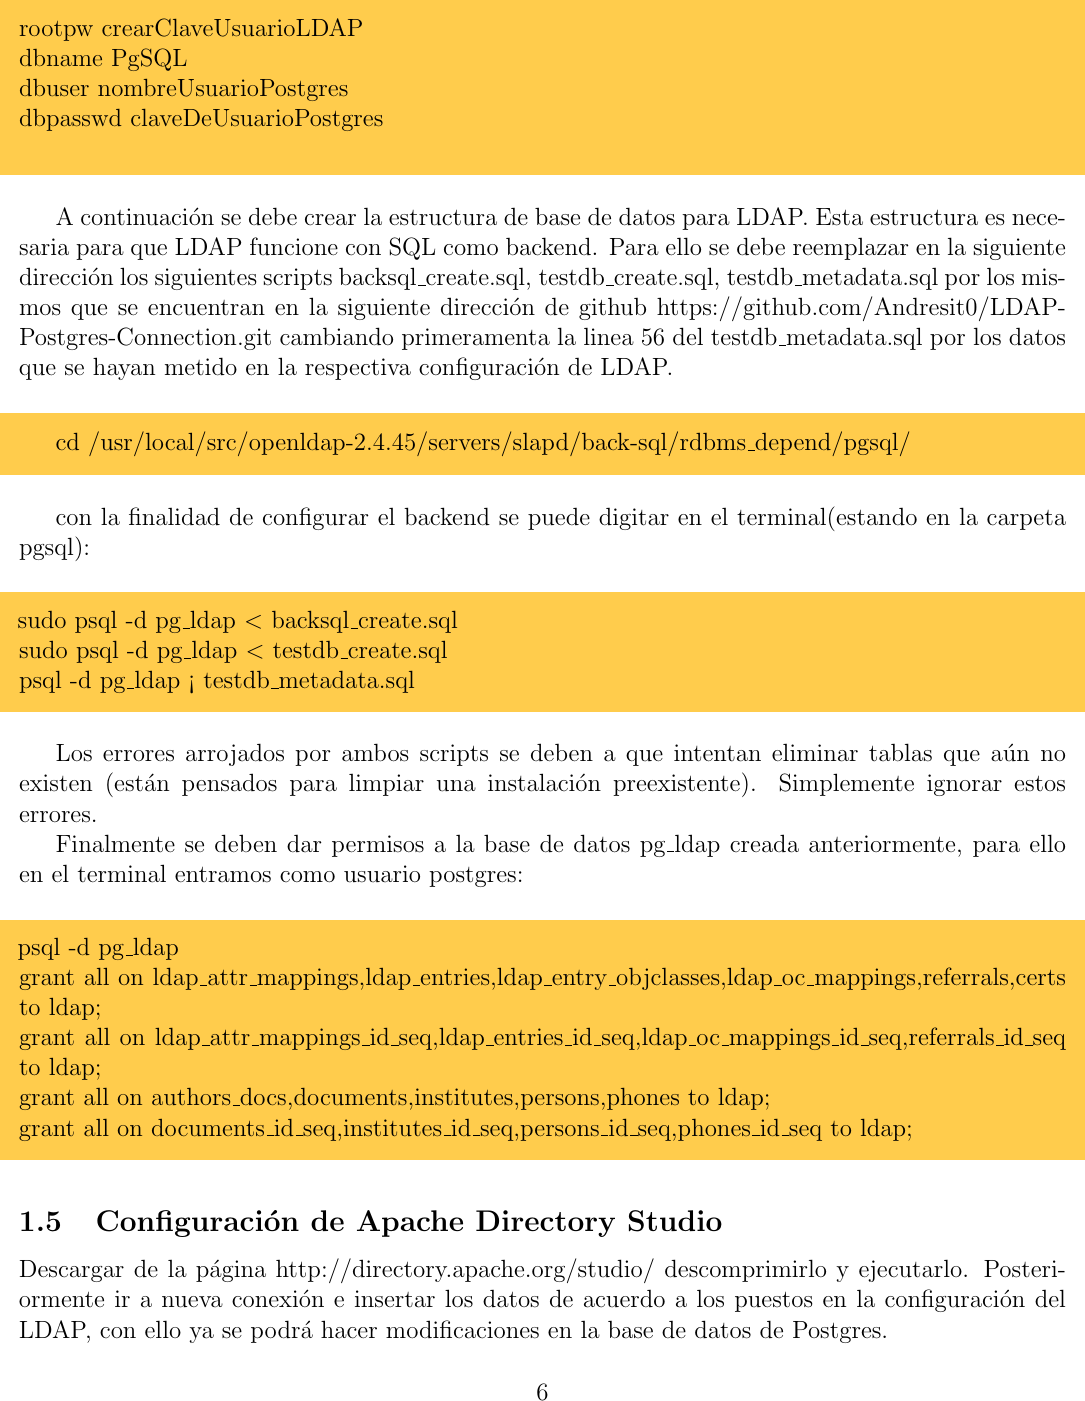 Page 6 of 11 - Manual De Configuracion